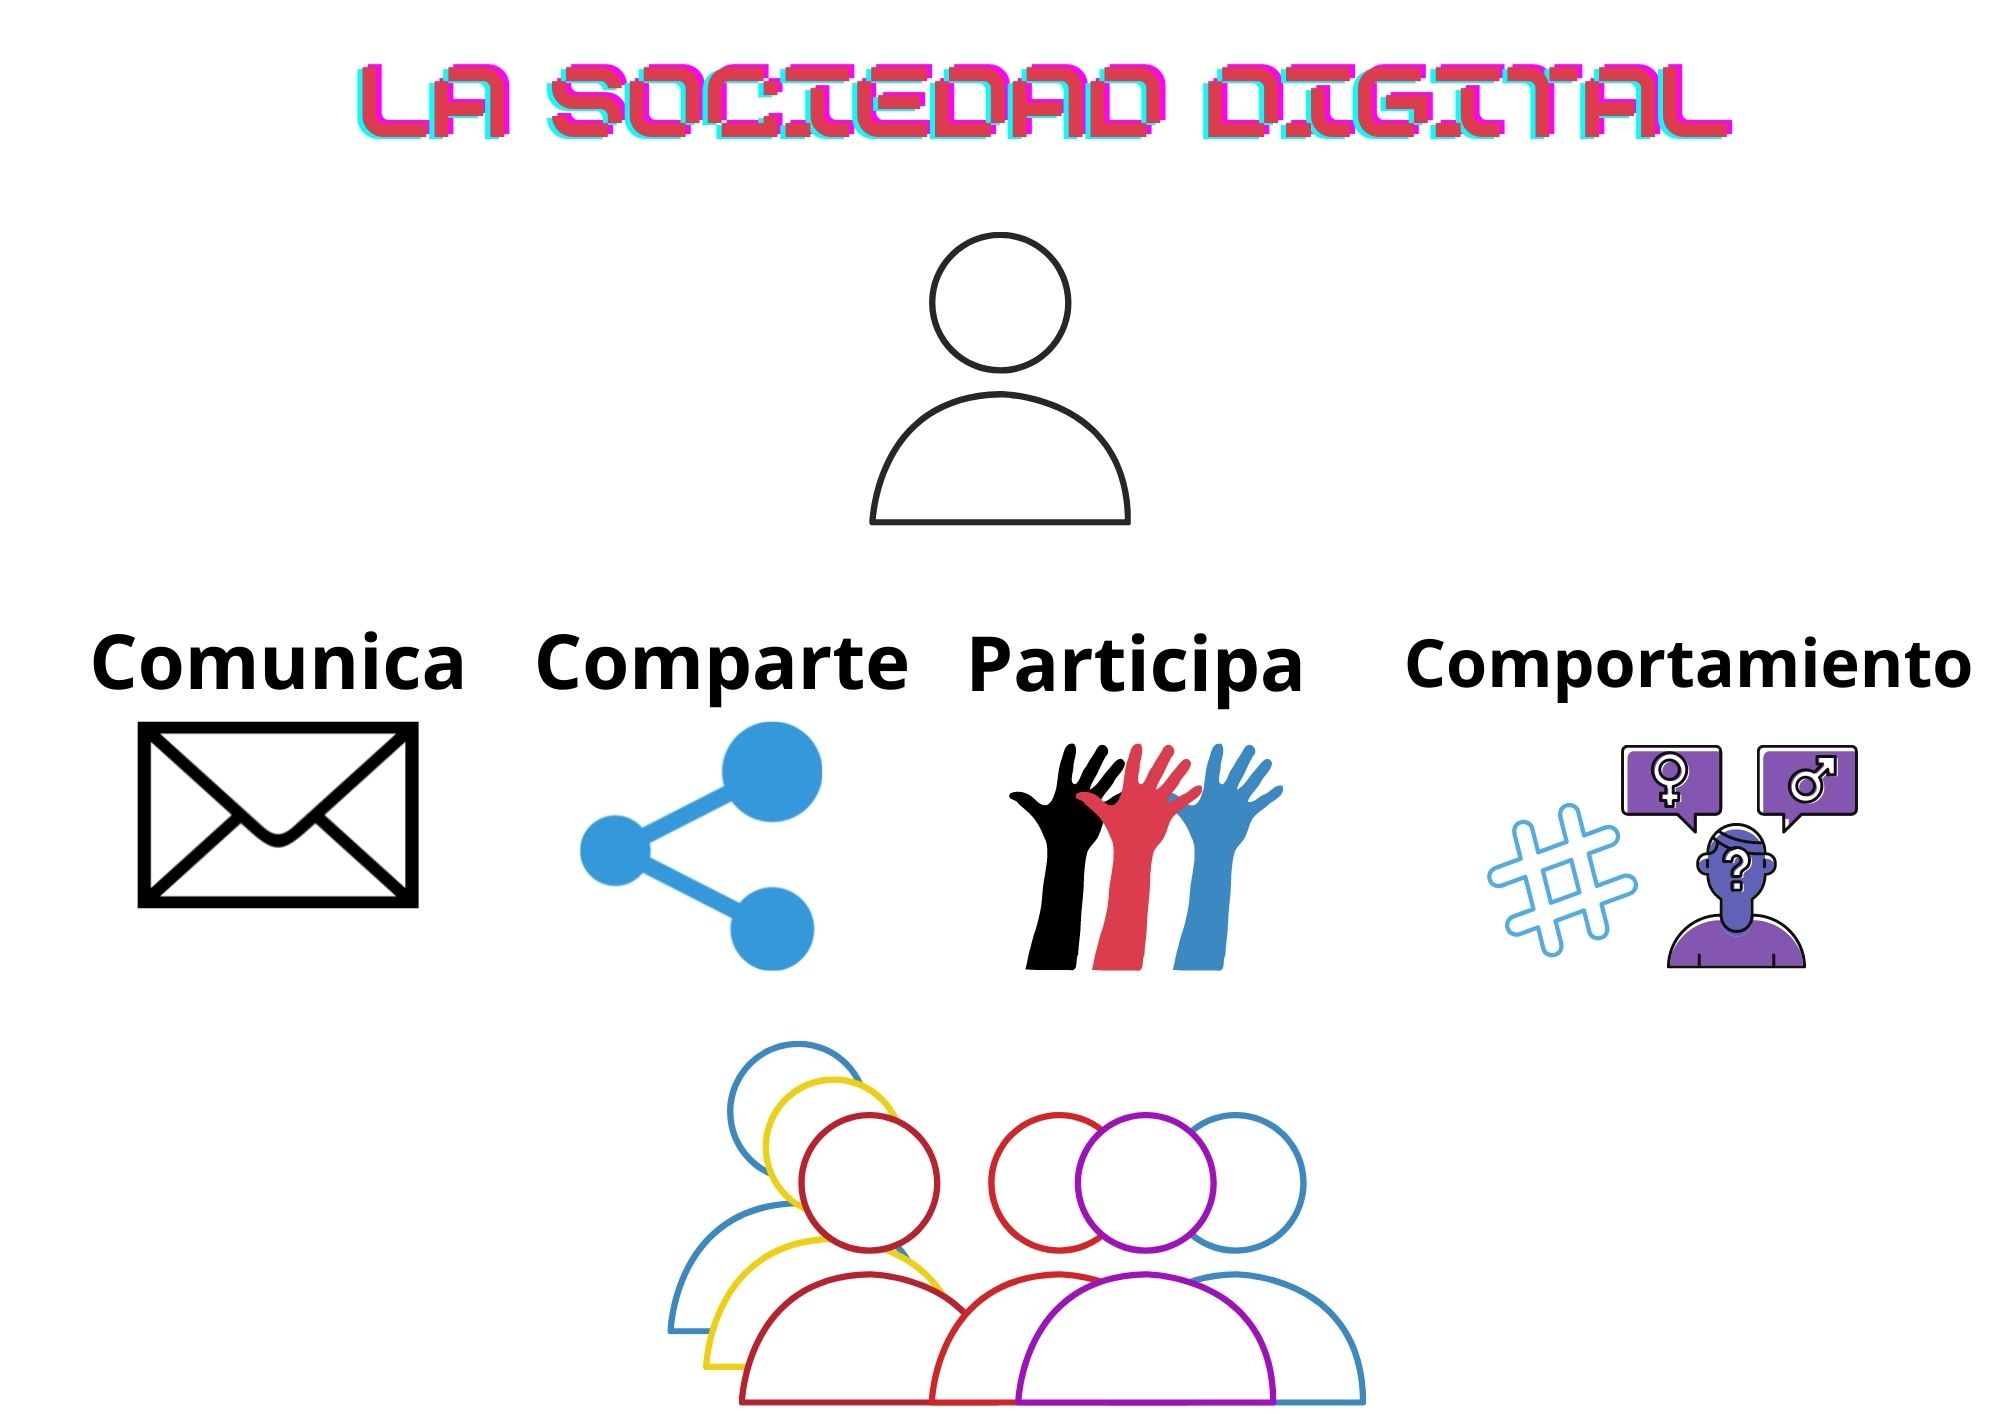 La sociedad digital: comunica, comparte, participa y comportamiento en red